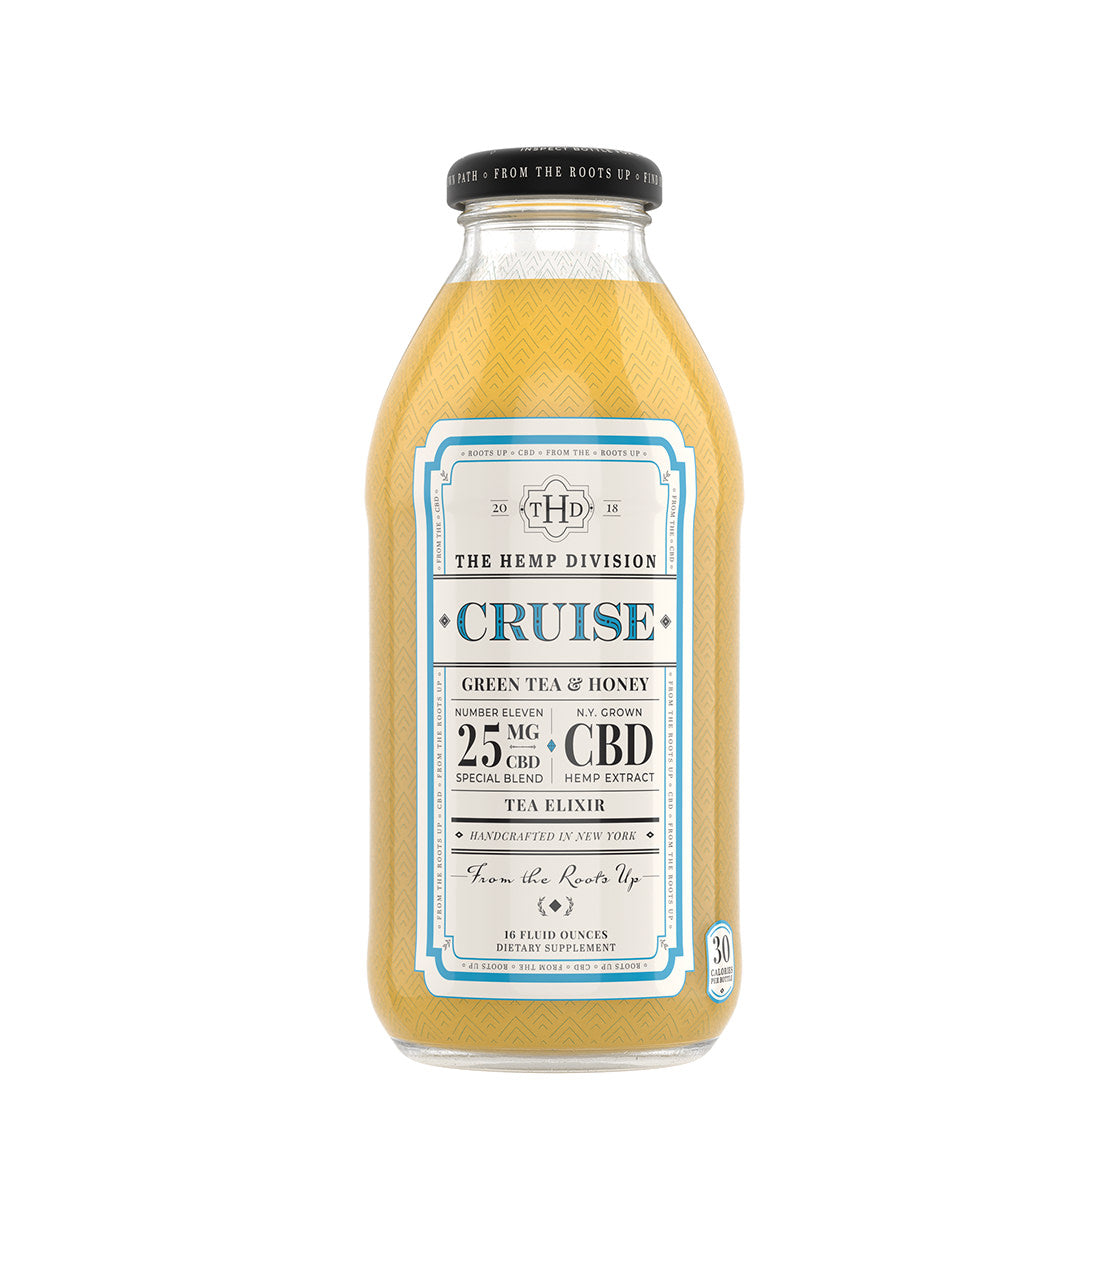 Cruise - Green Tea & Honey - 25 MG CBD - 16 oz. Bottle Case of 12 Bottles - Harney & Sons Fine Teas